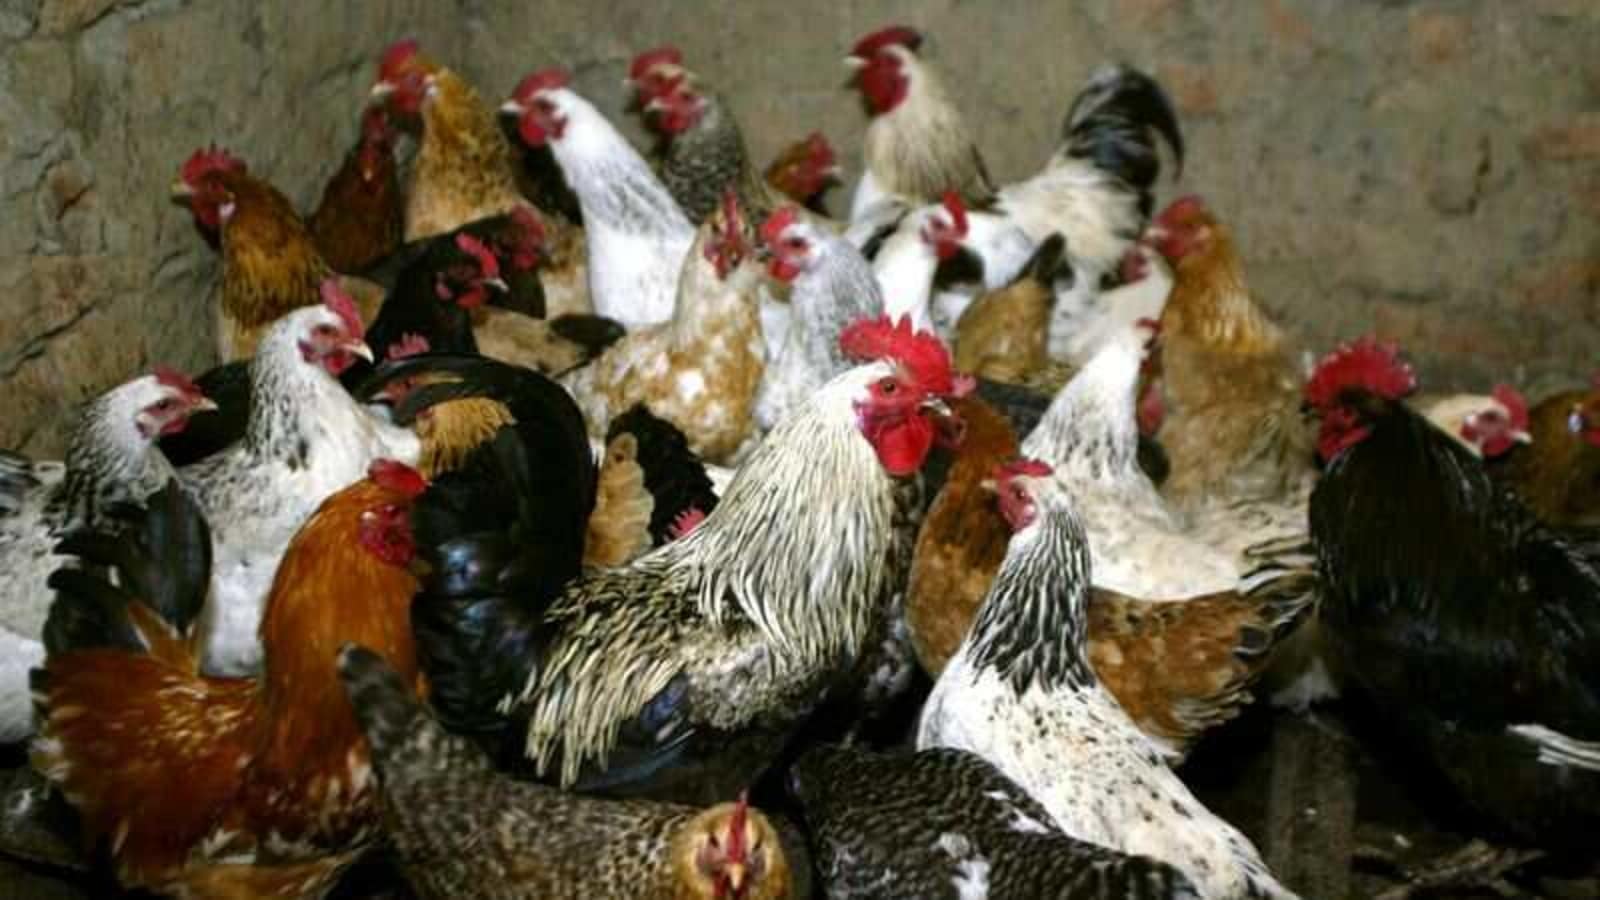 Afghanistan reports H5N8 bird flu on farm: OIE